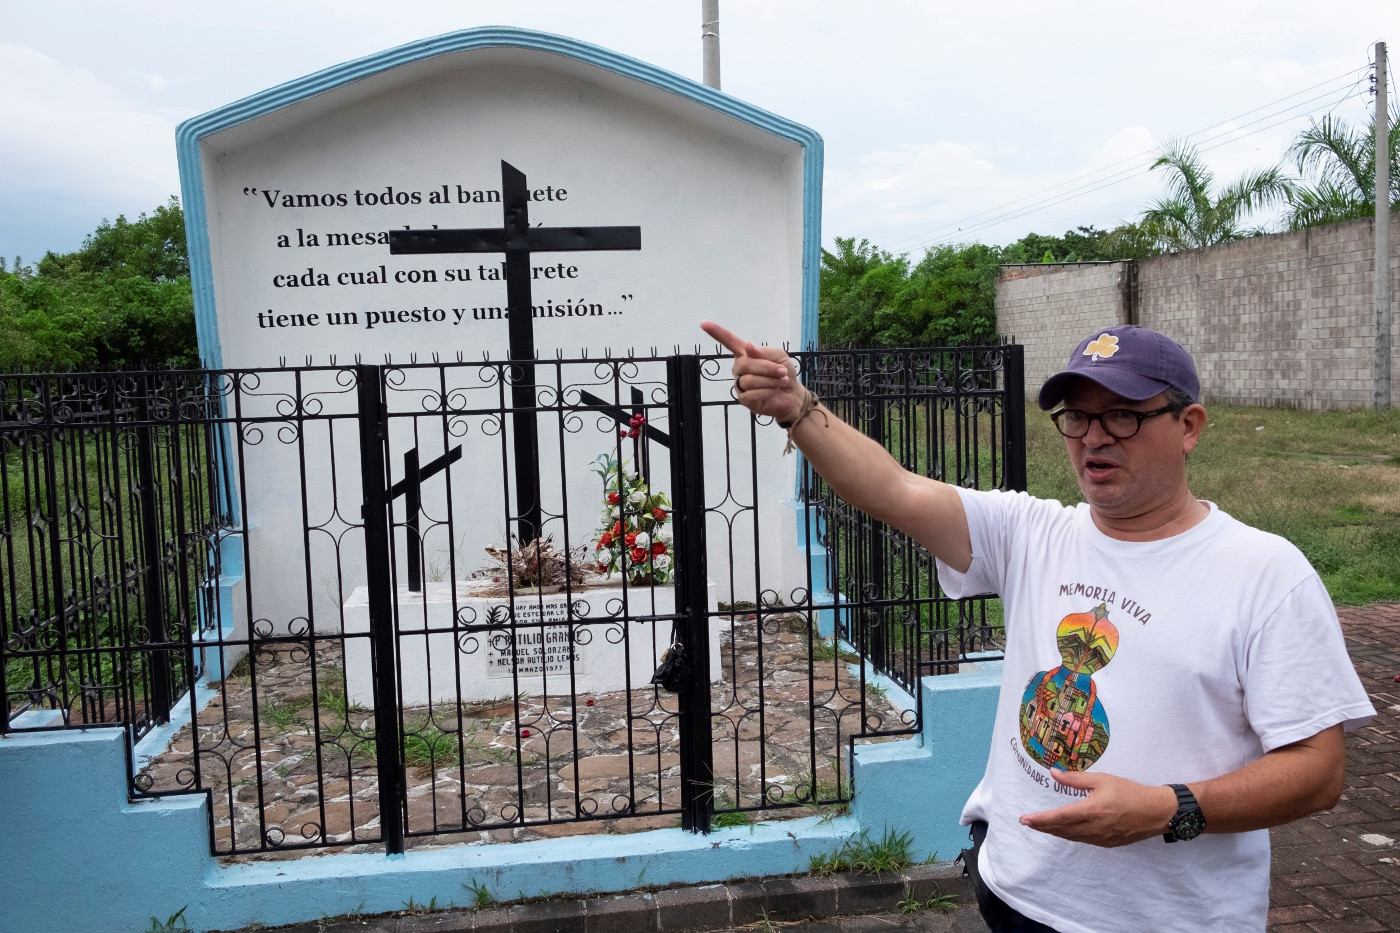 An dieser Stelle in der Nähe von El Paisnal wurde Rutilio Grande am 12. März 1977 erschossen. Sein Tod löste bei Óscar Romero einen Sinneswandel aus, den manche als "Bekehrung" beschreiben. Foto: Matthias Hoch/Adveniat